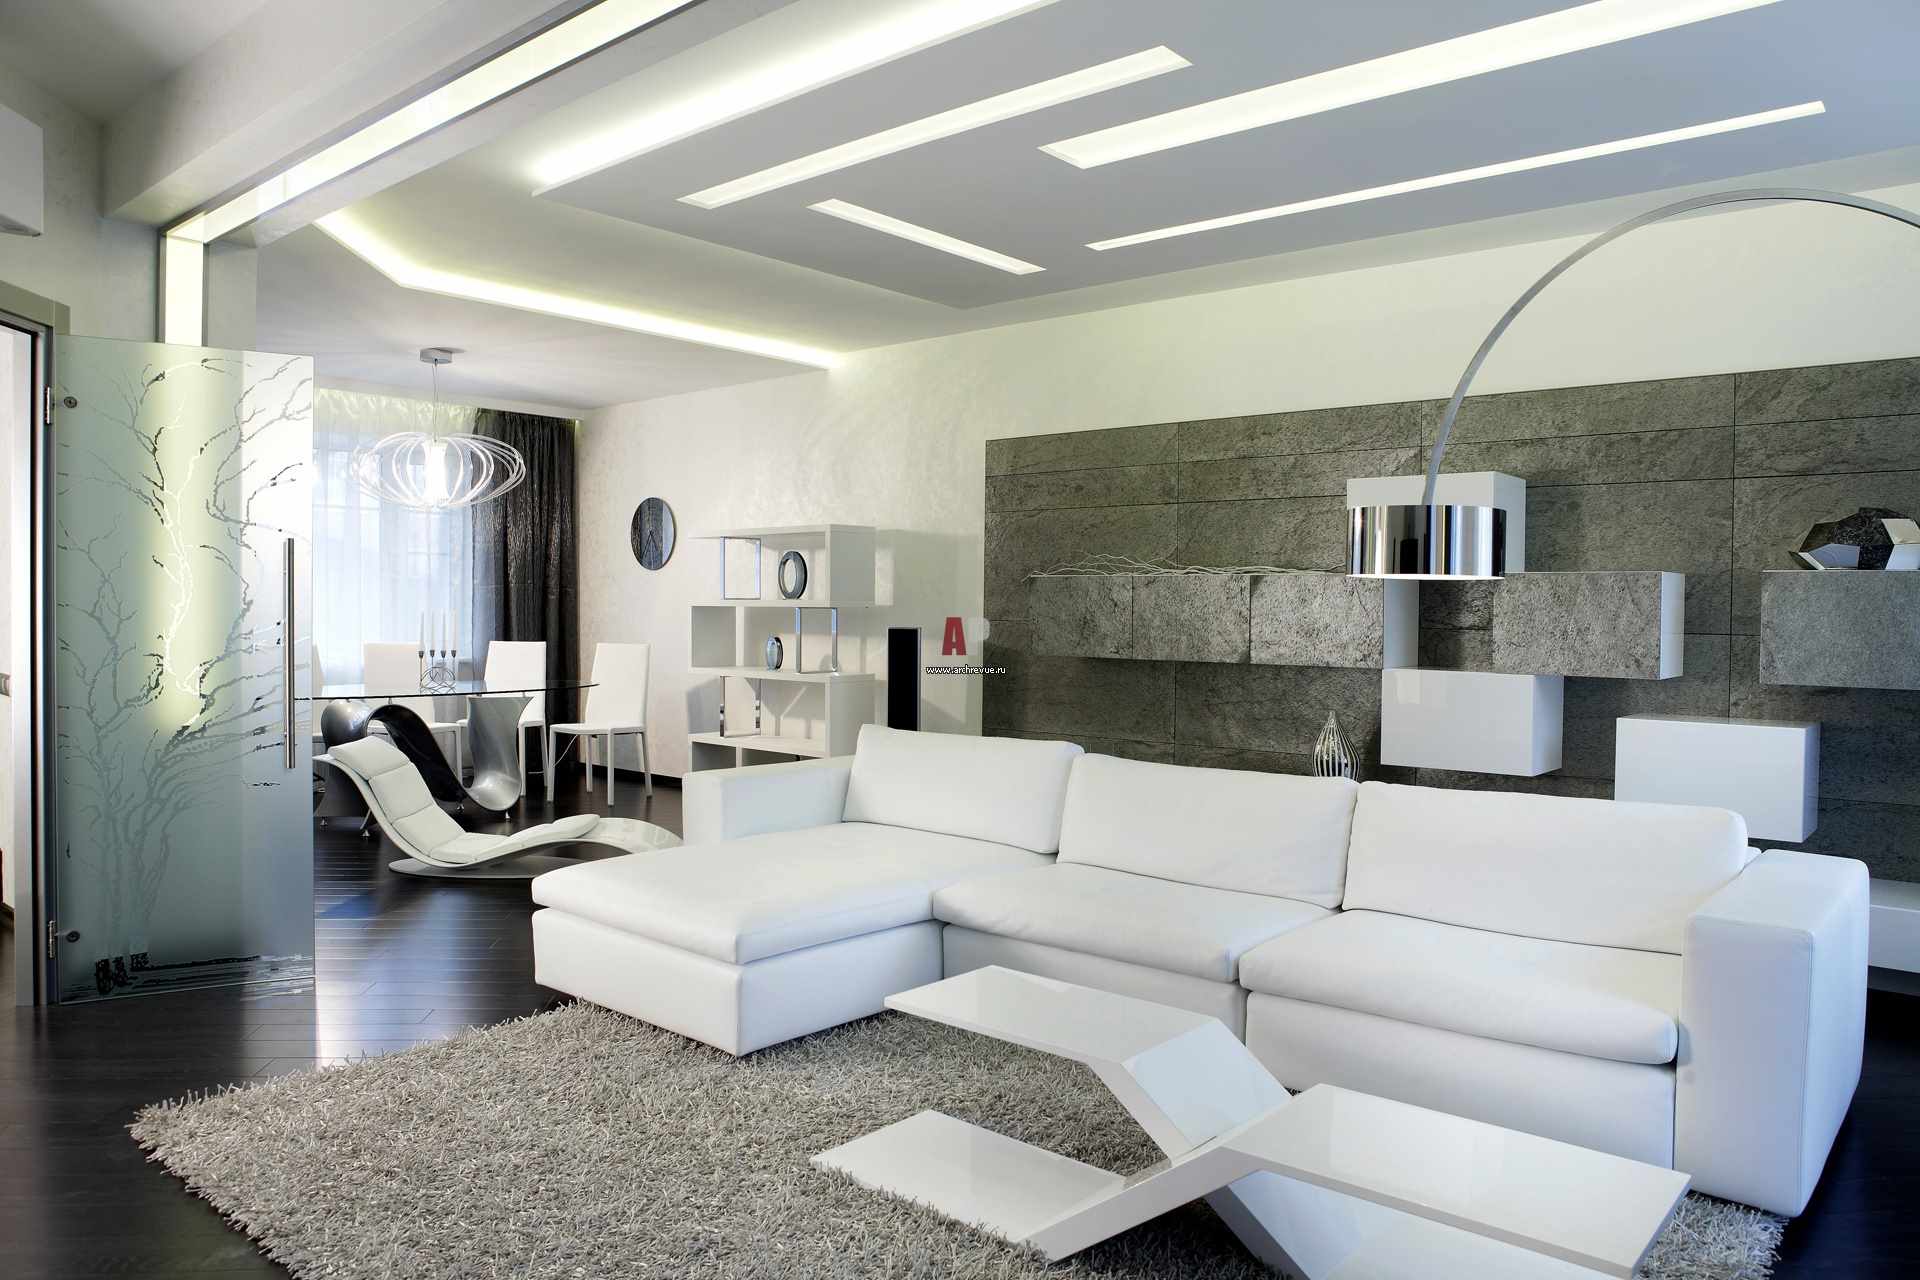 egy példa a nappali világos belső térének minimalista stílusú alkalmazására